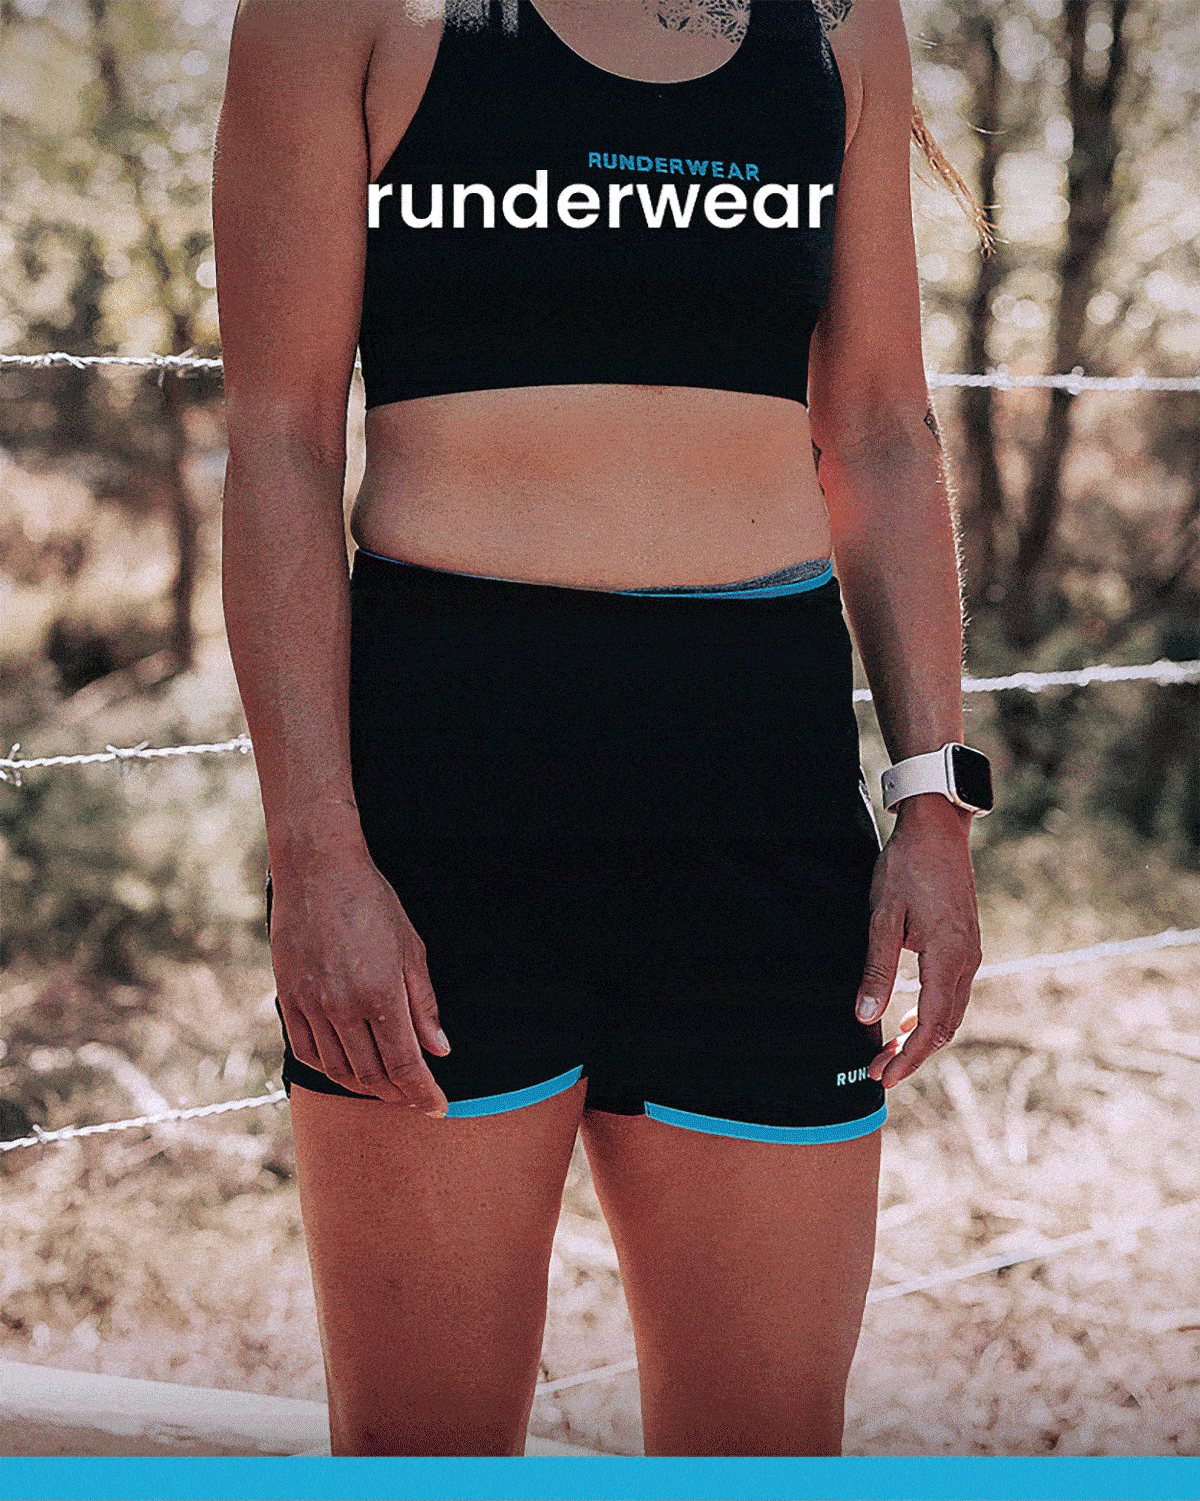 Runderwear: Your Hidden Advantage